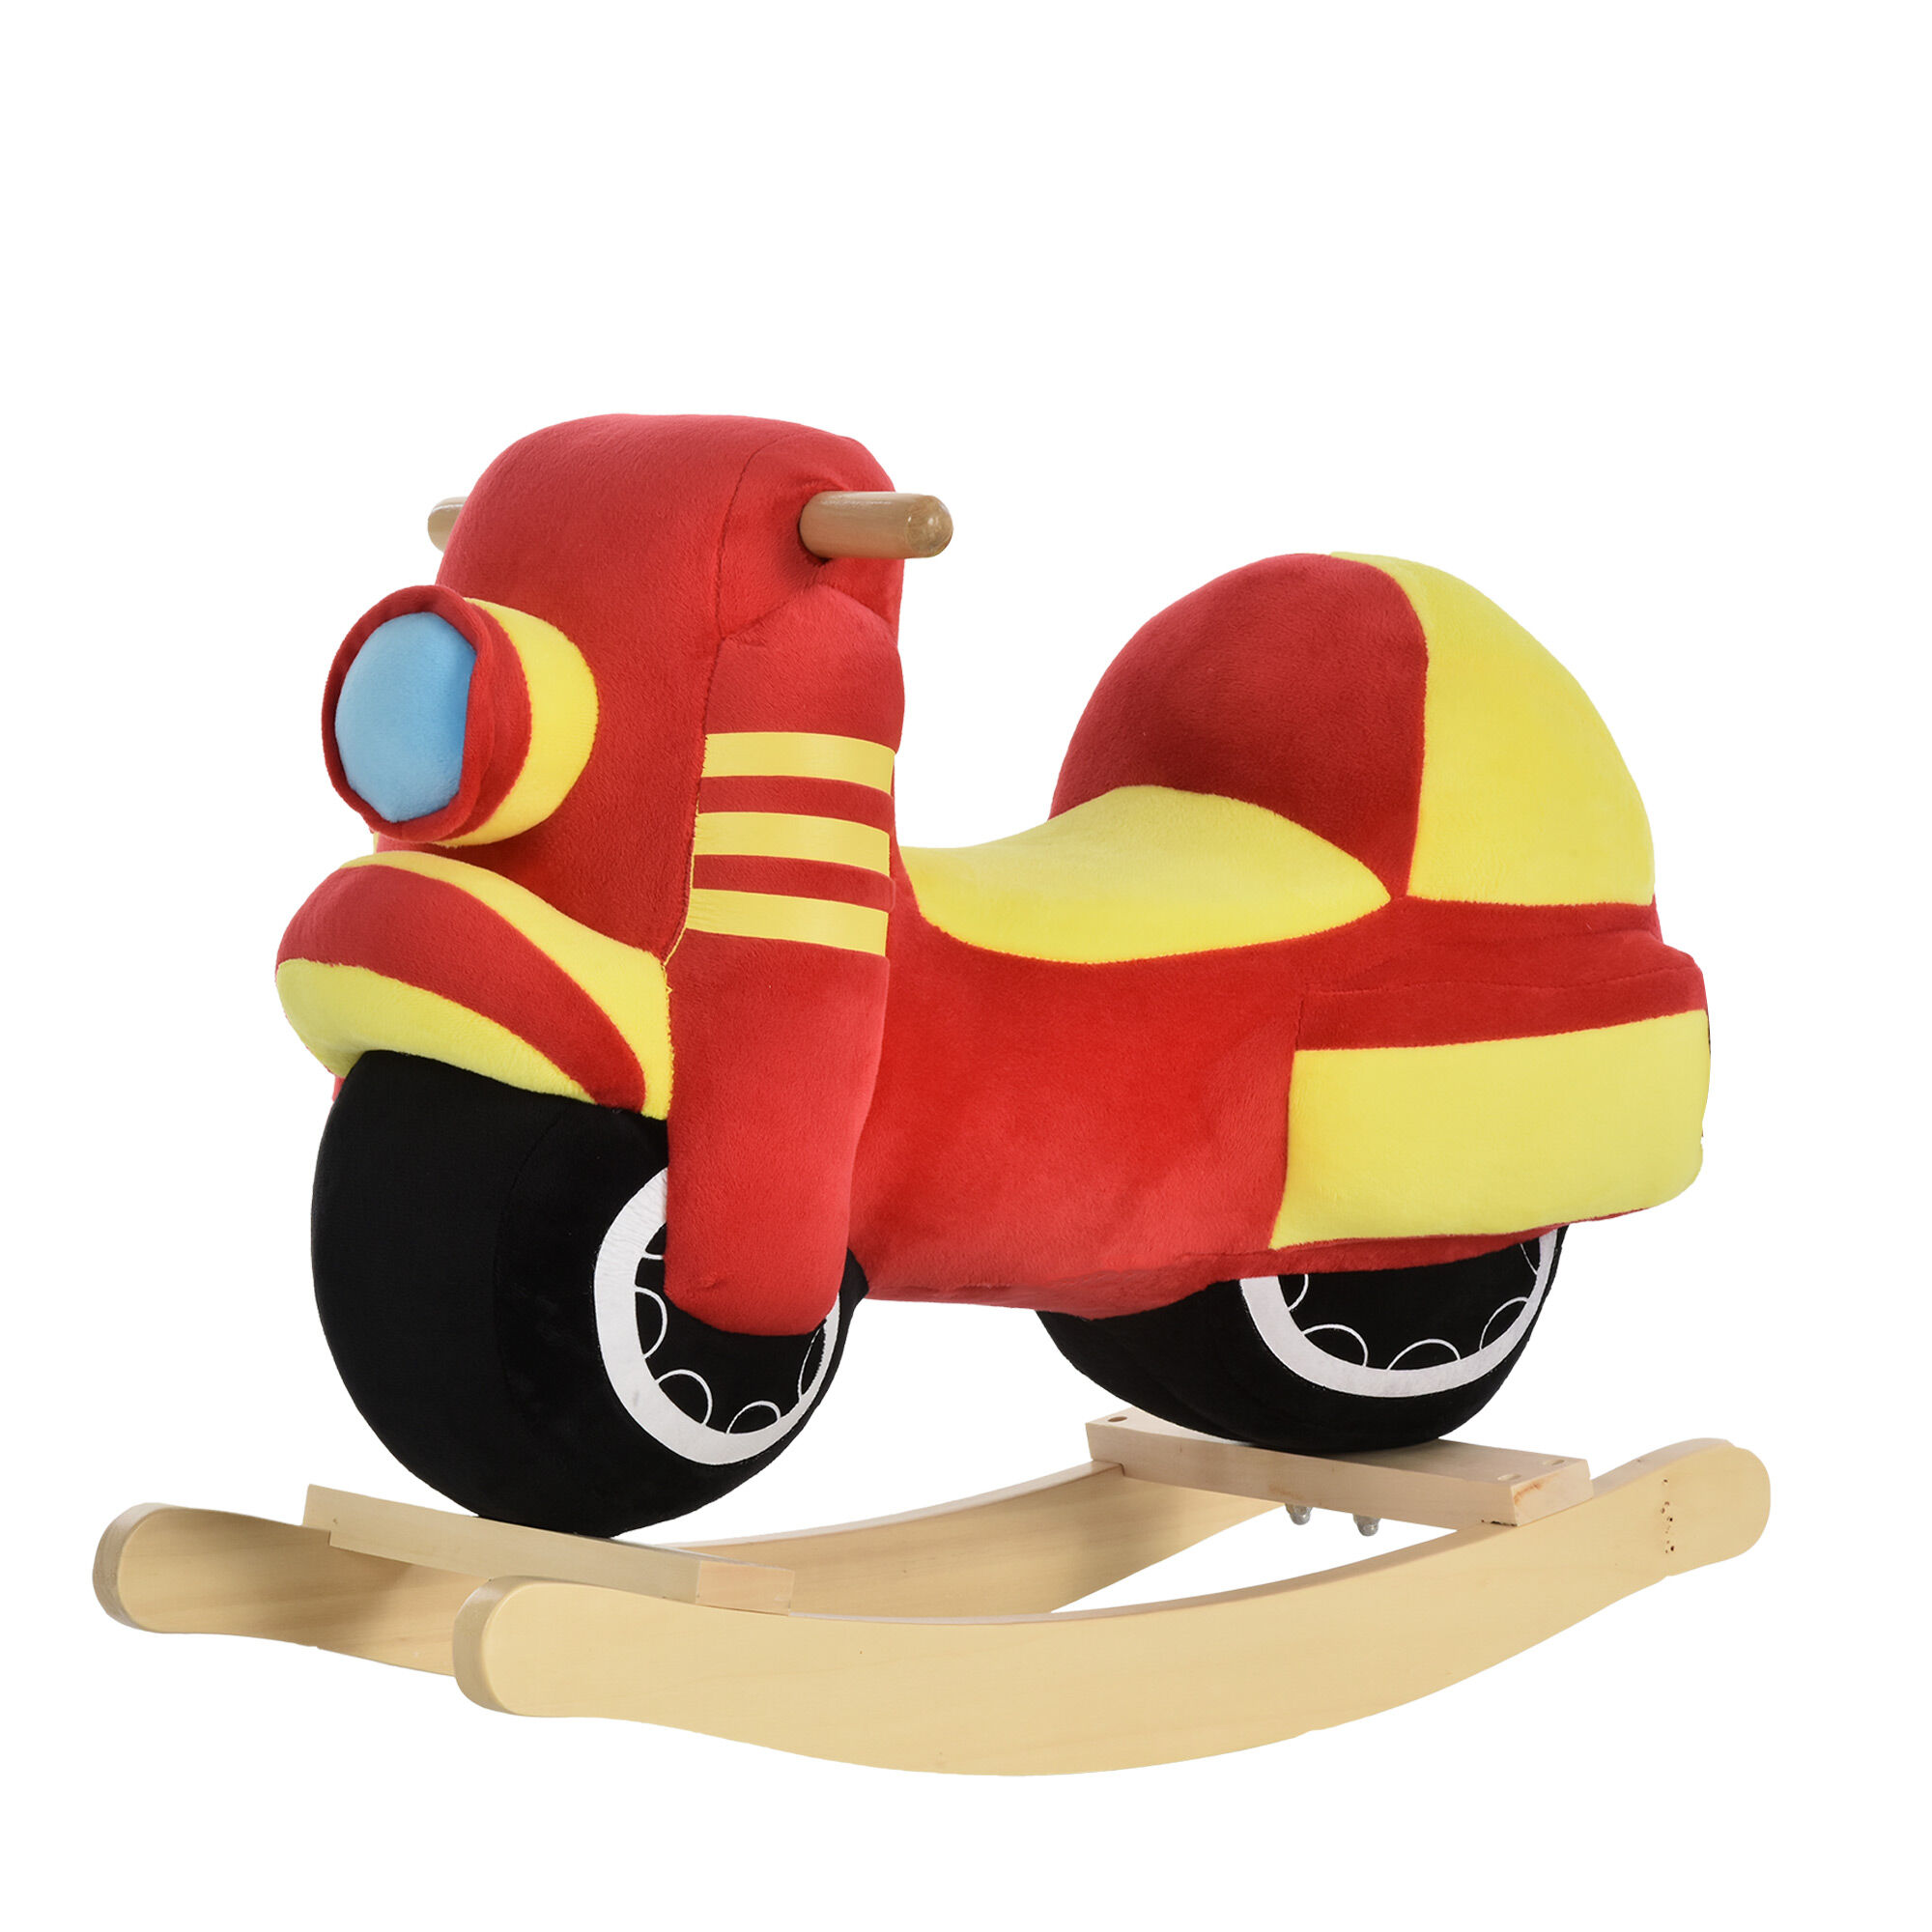 Homcom Cavallo a dondolo stile moto seduta imbottita con suono per bambini 18-36 mesi rosso giallo  Max.carico 40kg